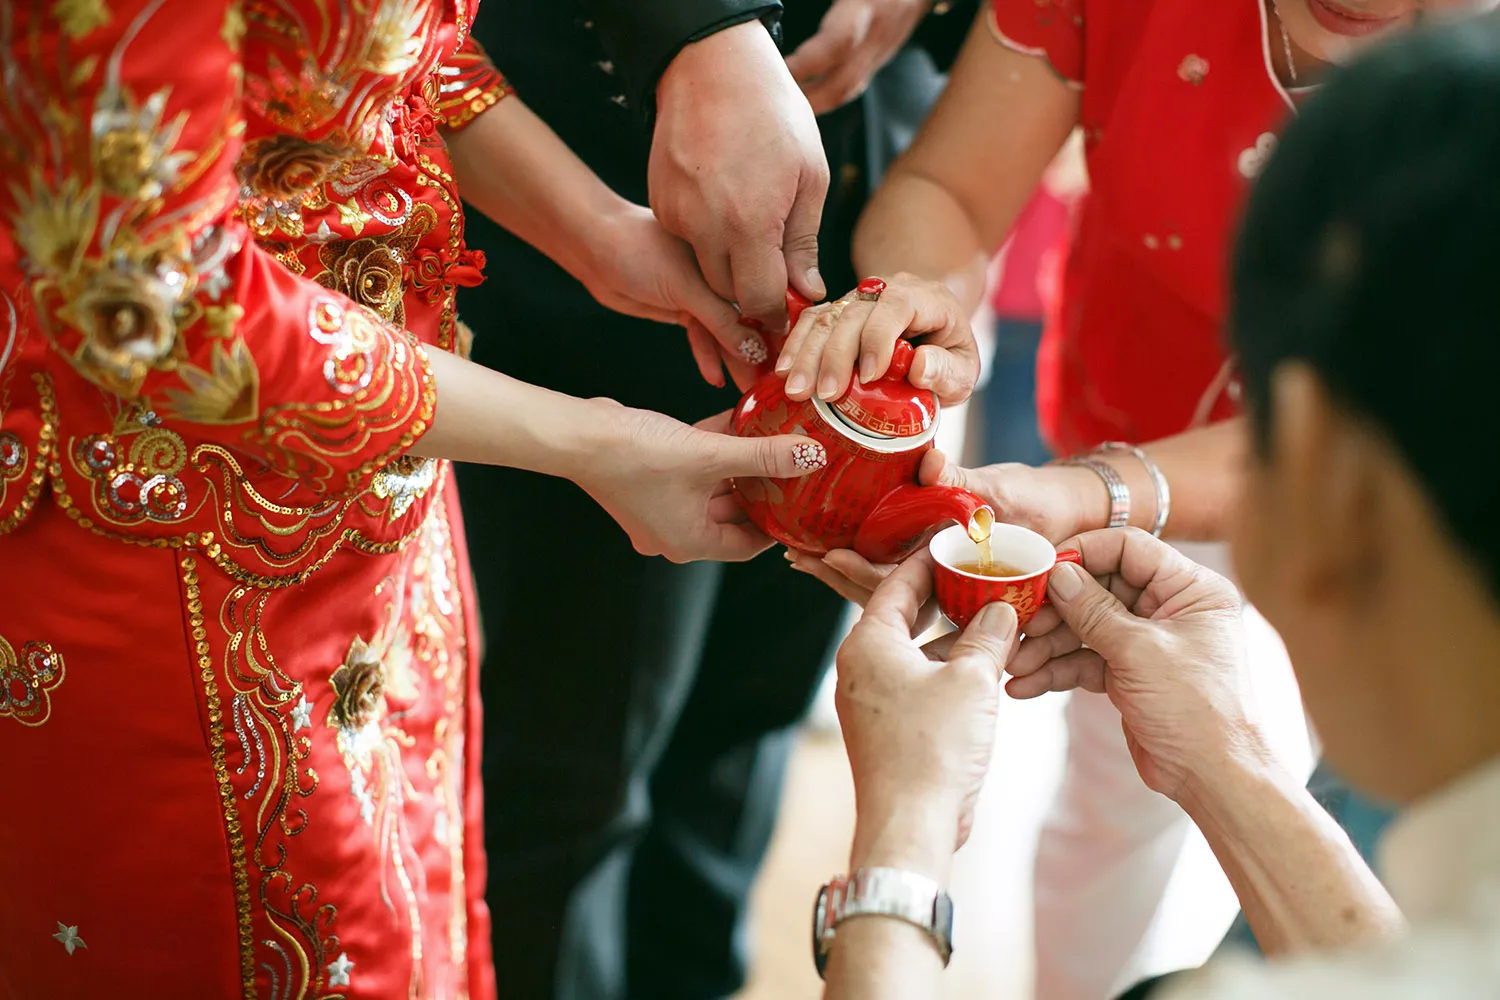 傳統禮俗繁複，訂婚結婚差別尤其大，新人可提早準備。